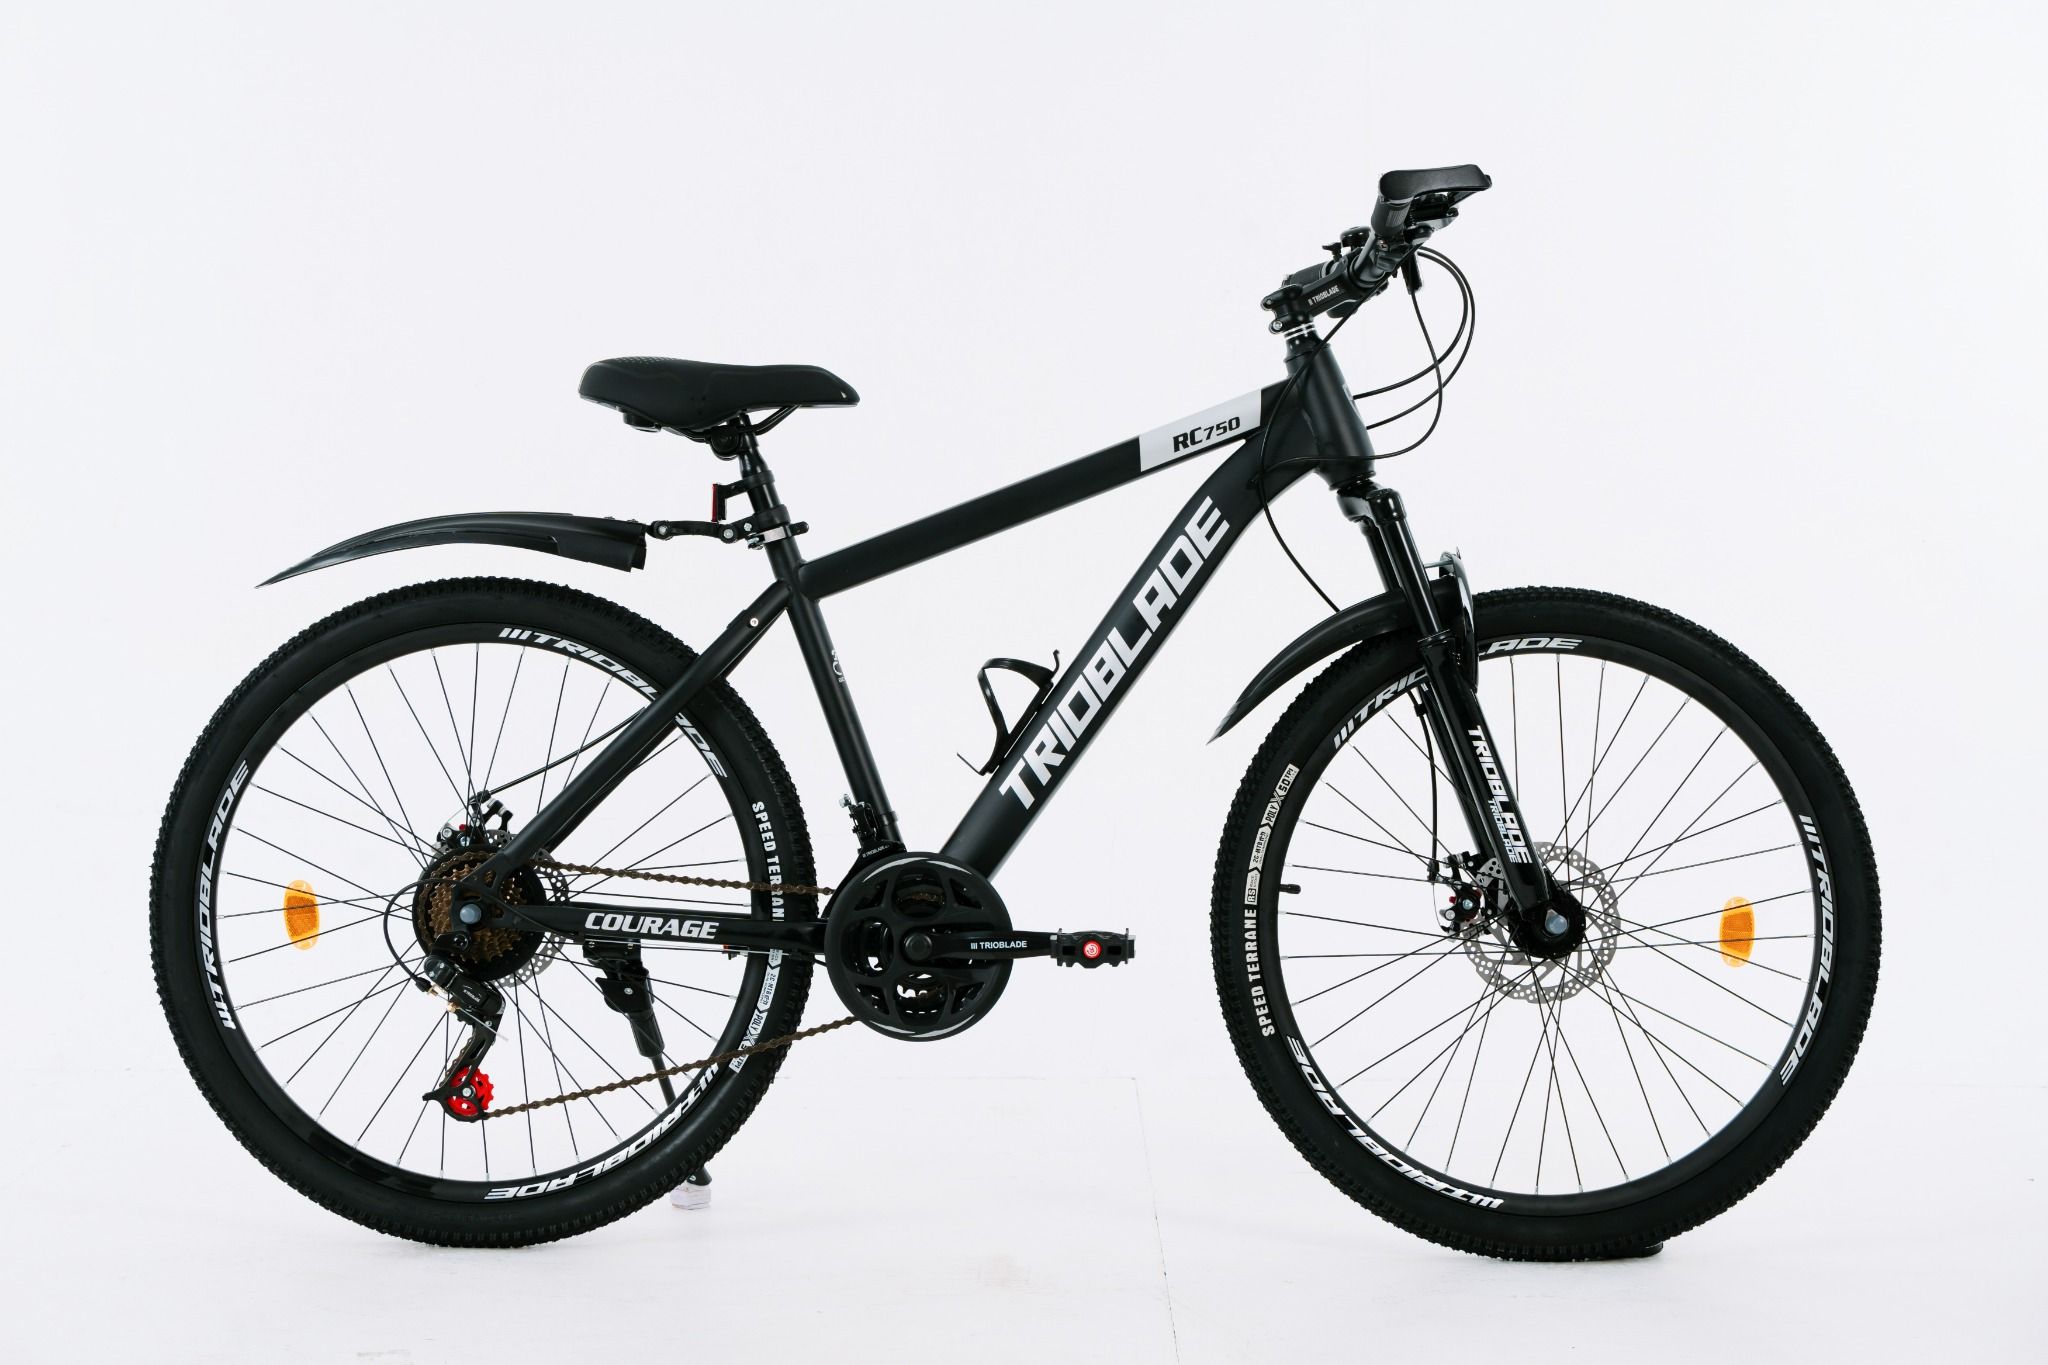  Xe đạp thể thao TRIOBLADE RC - 750 